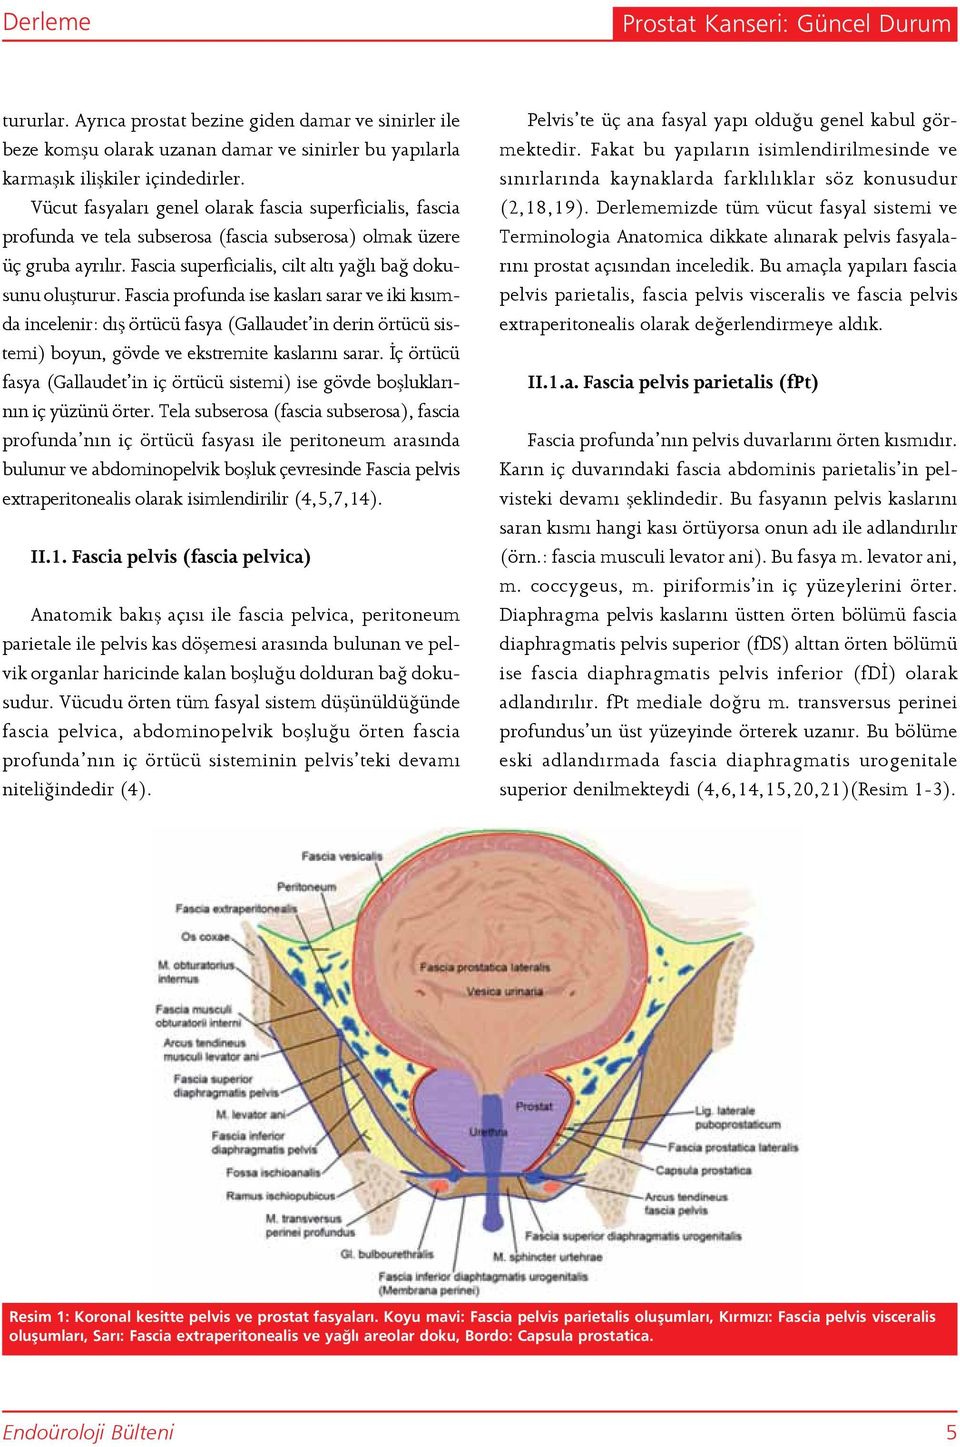 Fascia profunda ise kasları sarar ve iki kısımda incelenir: dış örtücü fasya (Gallaudet in derin örtücü sistemi) boyun, gövde ve ekstremite kaslarını sarar.